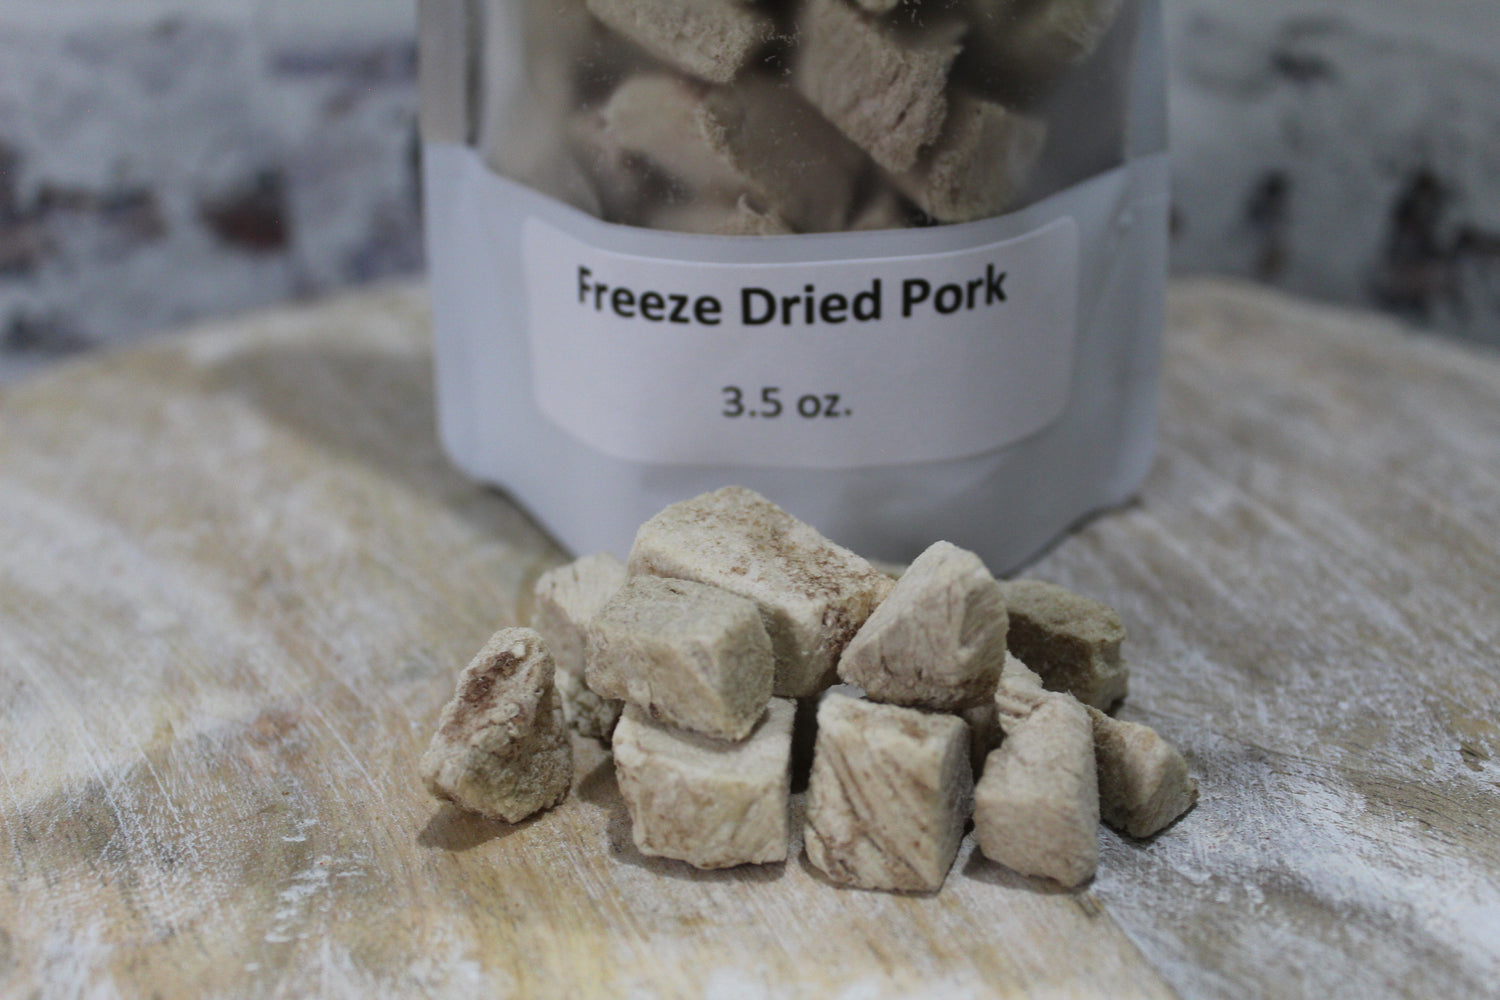 Freeze dried treats